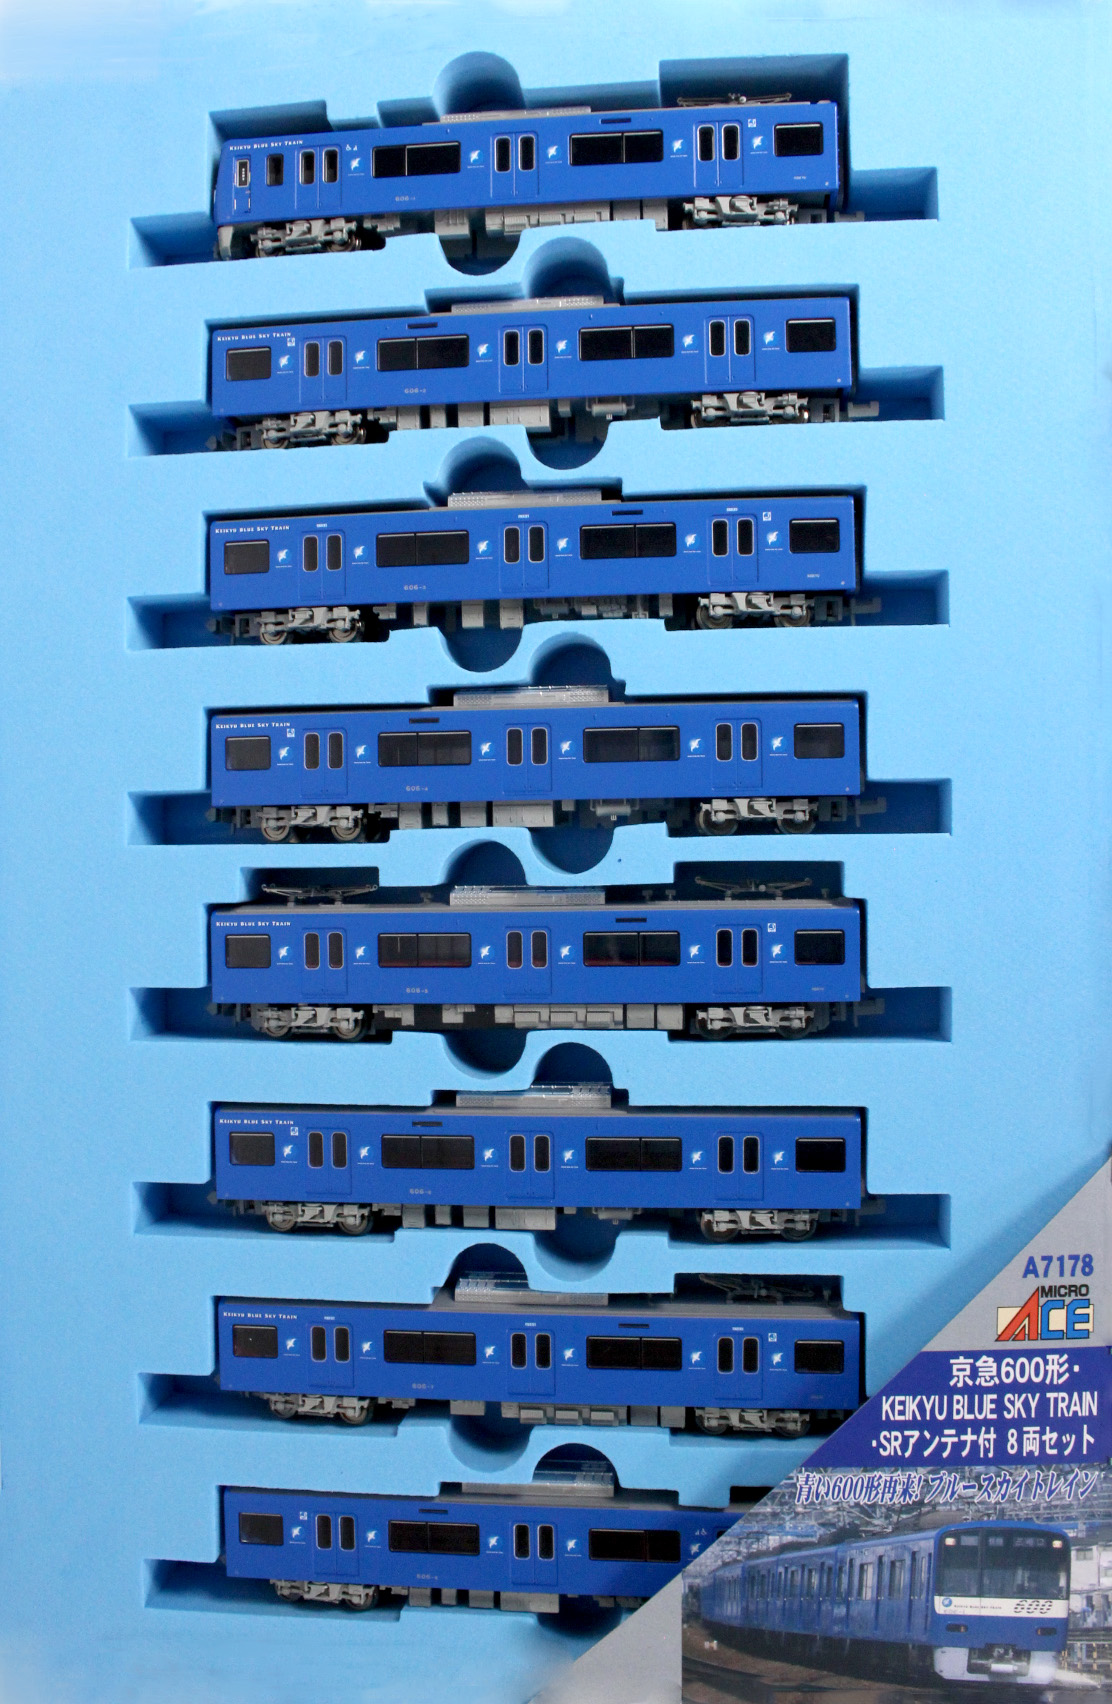 マイクロエース A7178 京急600形 KEIKYU BLUE SKY TRAIN SRアンテナ付 